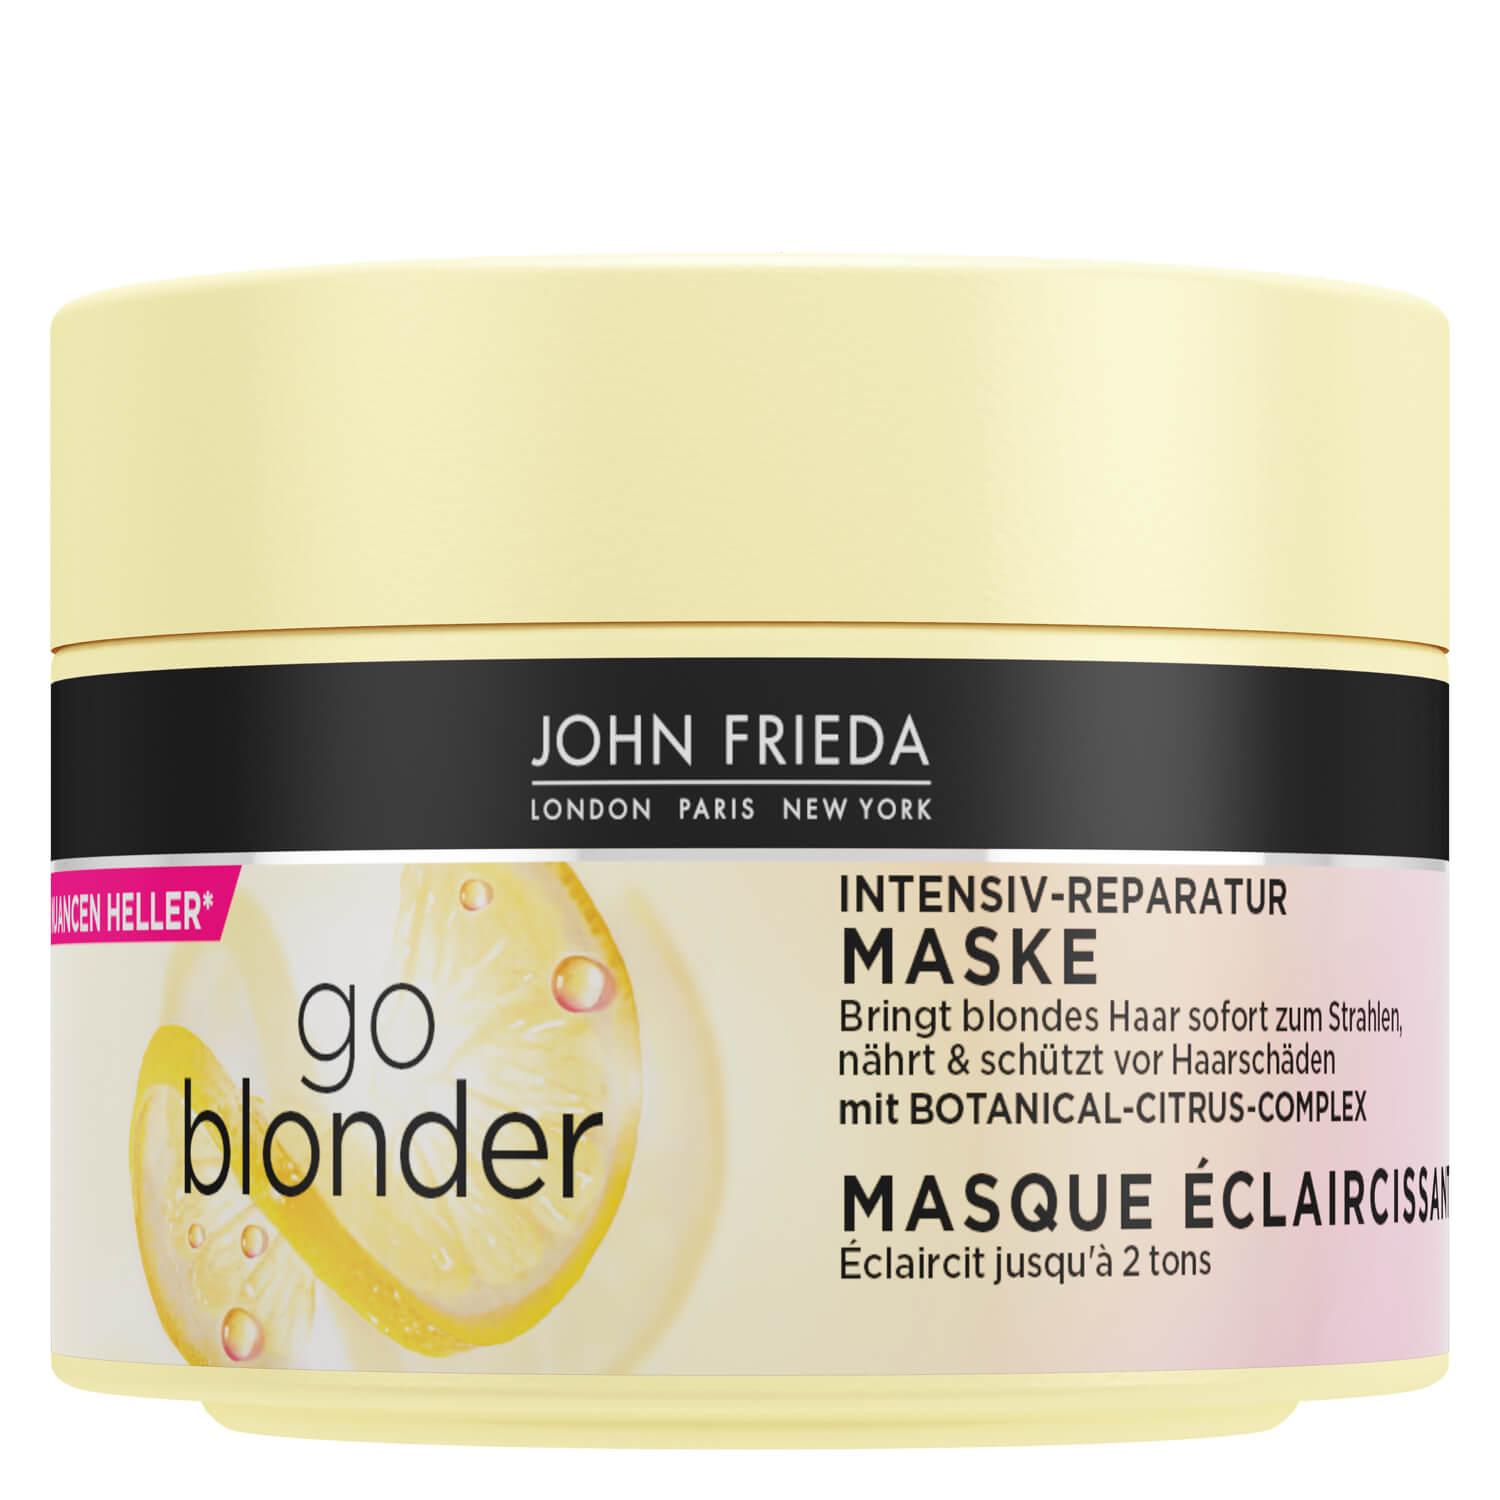 Sheer Blonde - Go Blonder Mask